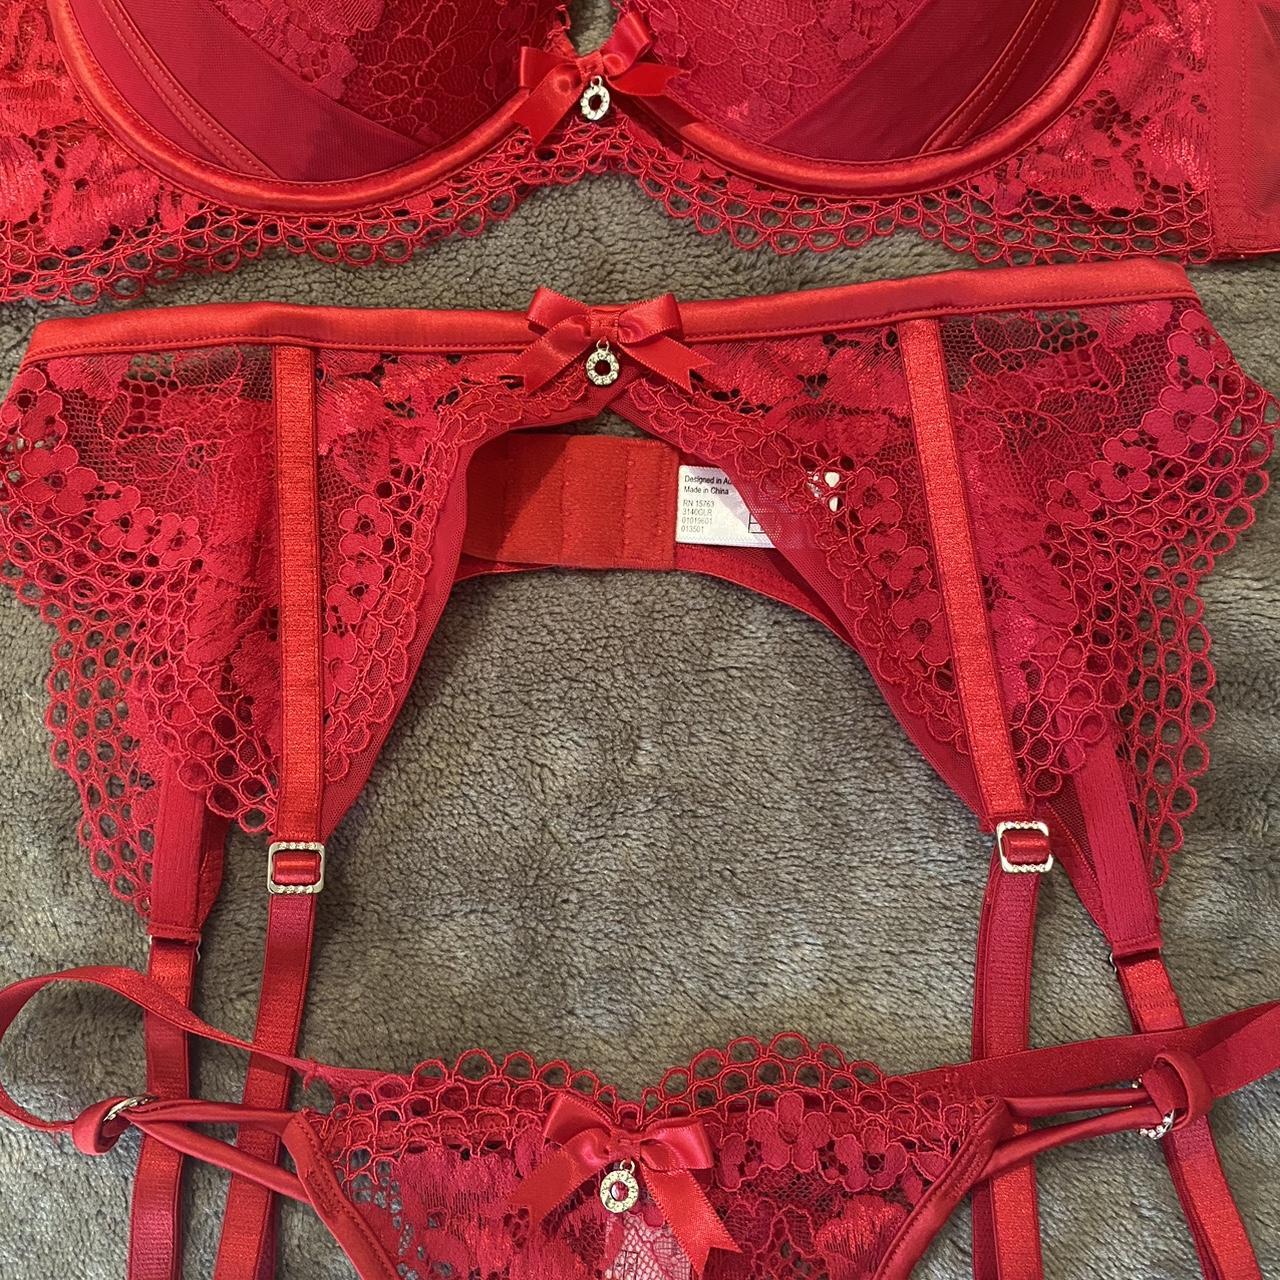 Bras N things Red lingerie set. Bra has been worn a... - Depop